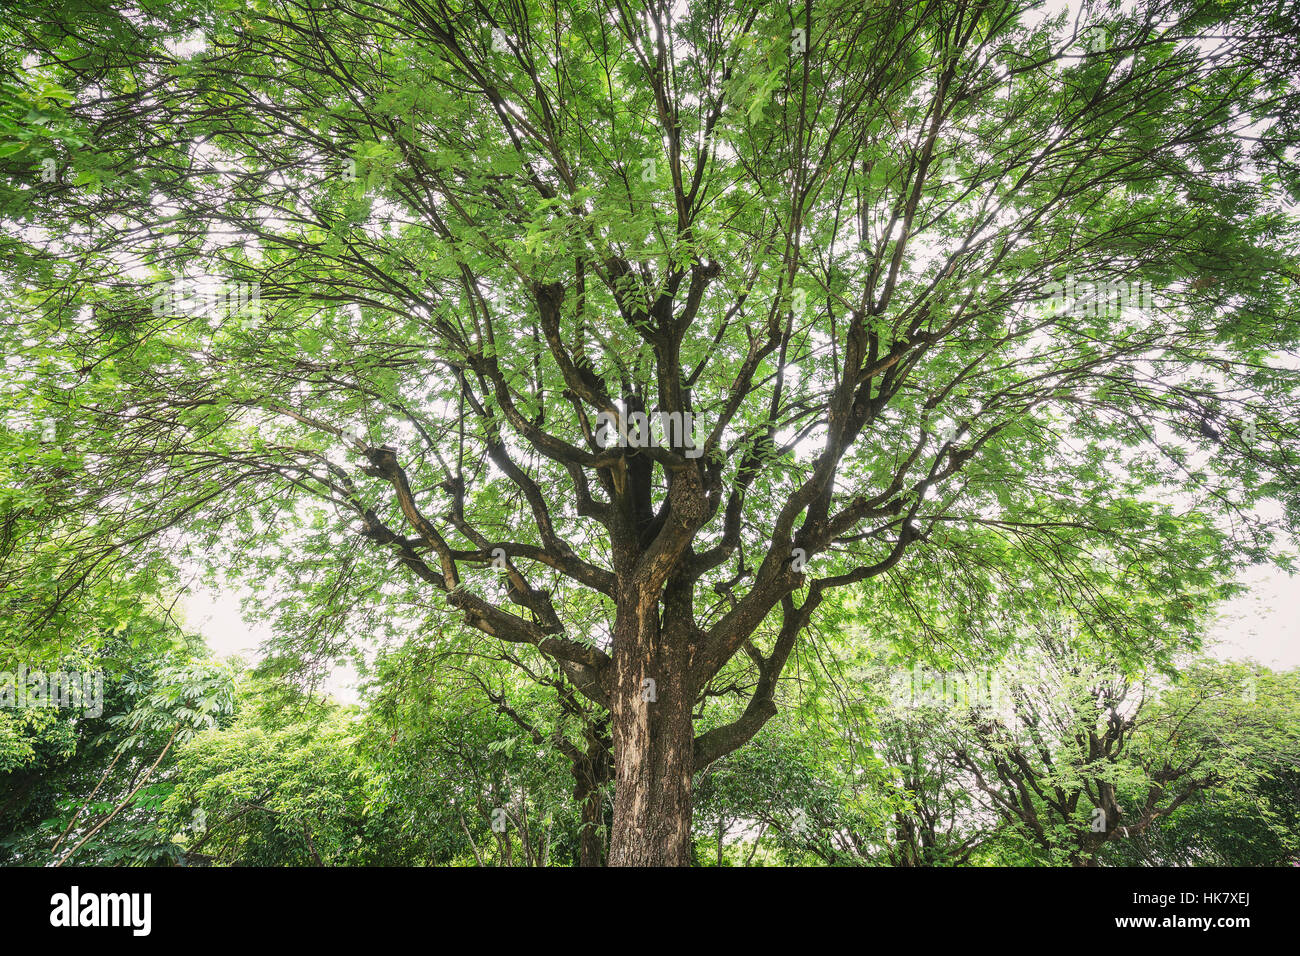 Un aspecto de gran Tamarind Tree tiene una amplia expansión ramas y hojas verdes frescas rodean en la parte superior con el cielo azul como fondo. Foto de stock